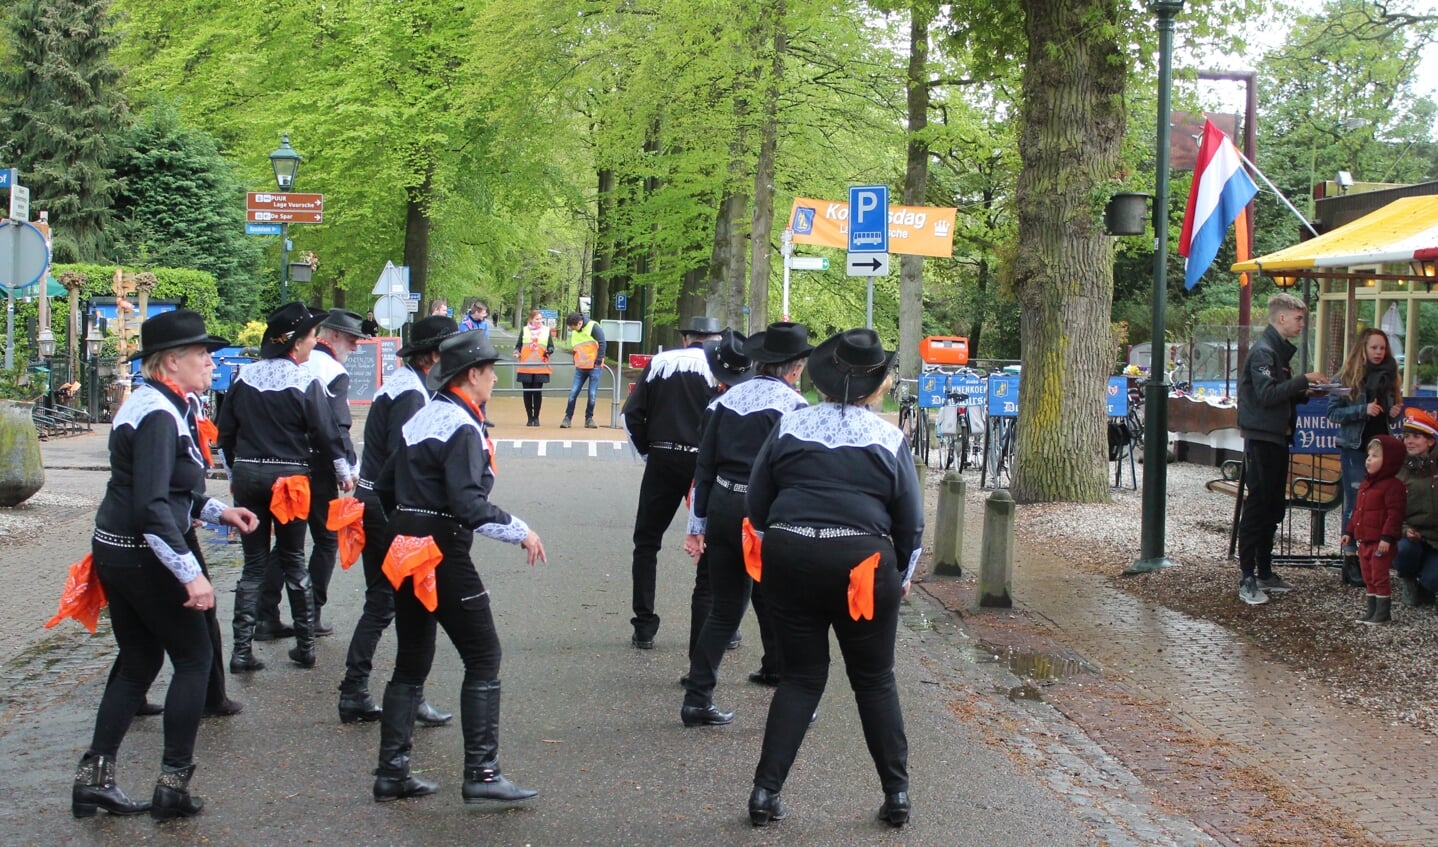 Tussen de buien door verzorgden de Blackhorst Linedansers uit Hilversum een viertal ‘demo’s’ gewoon op straat. [HvdB]

